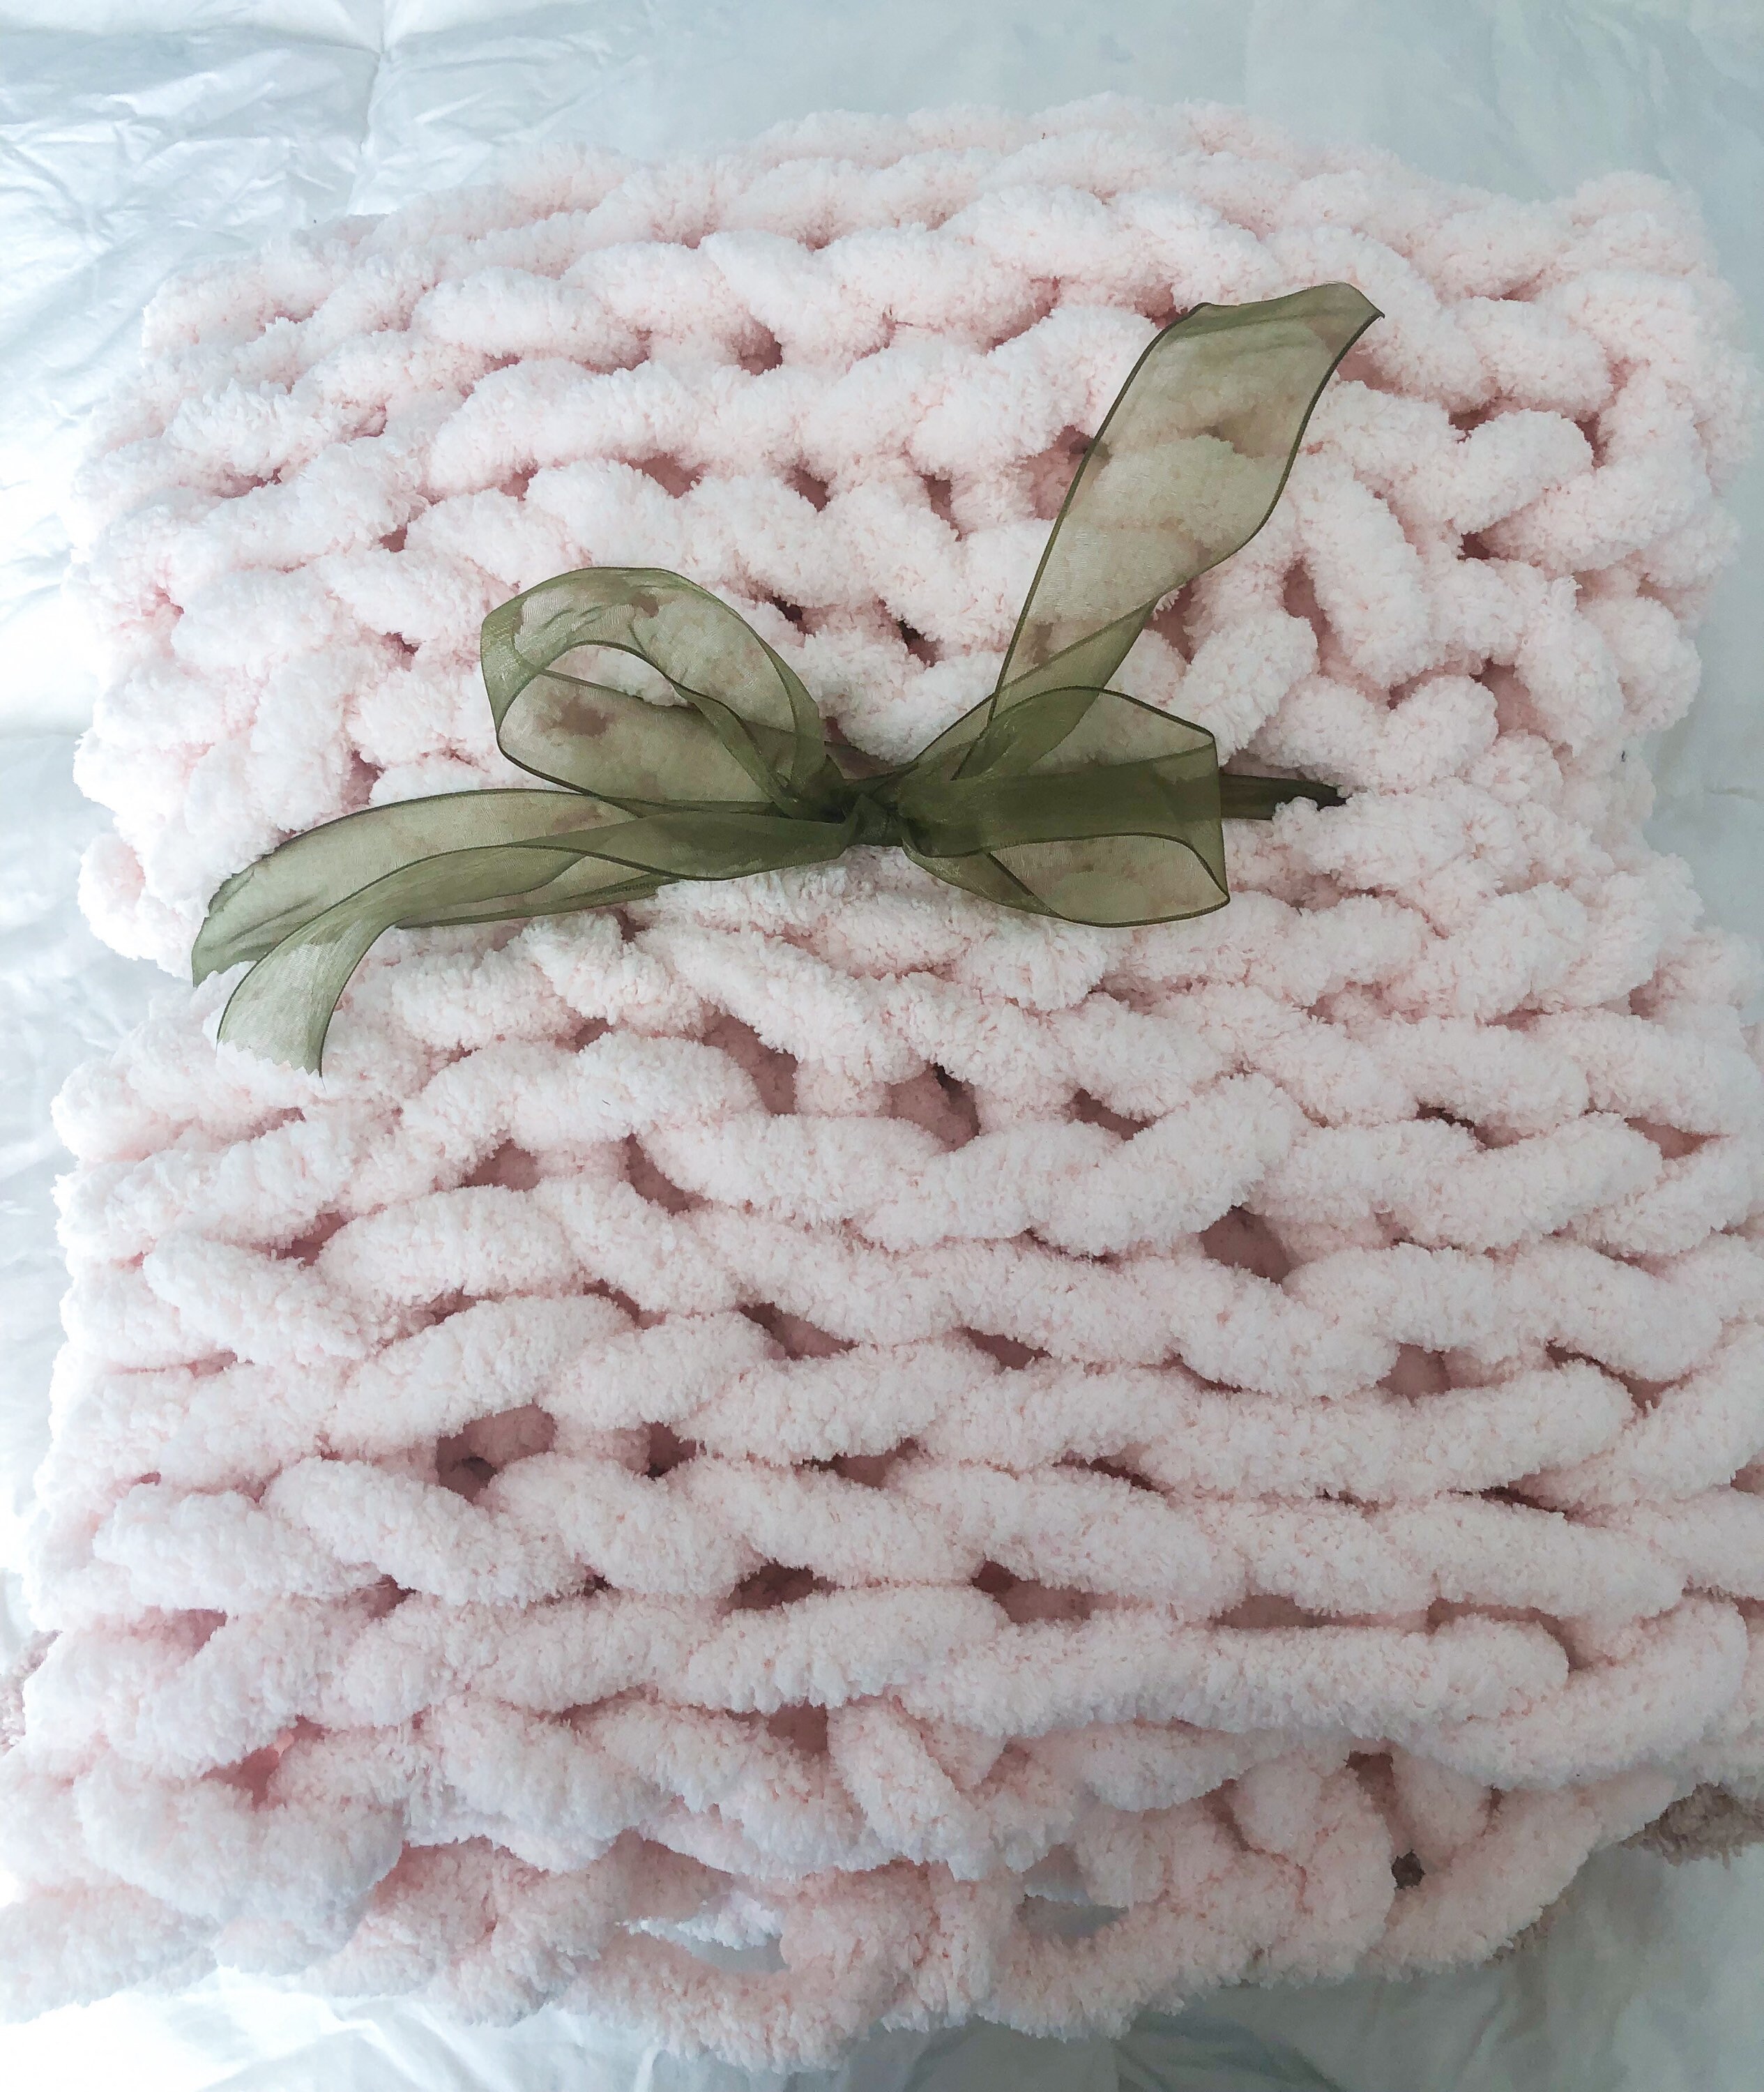 Chunky Knit Blanket, Honey Comb Pattern, Chunky Chenille Blanket, Hand Knit  Blanket, Chunky Knit Throw, Birthday Gift, Valentine's Day Gift 